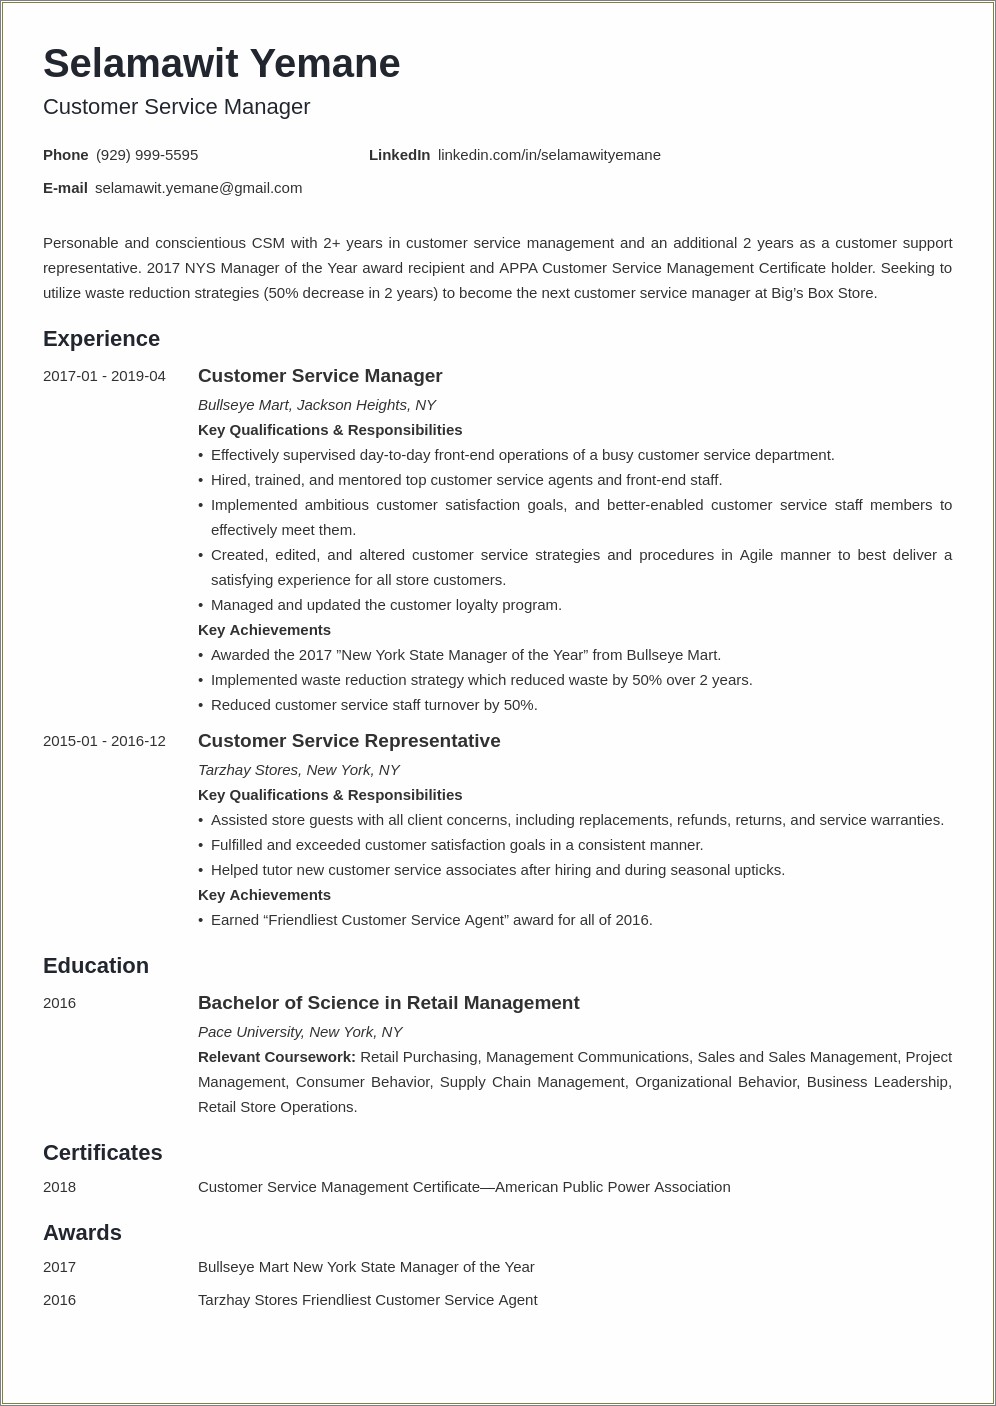 Customer Experience Executive Job Description Resume